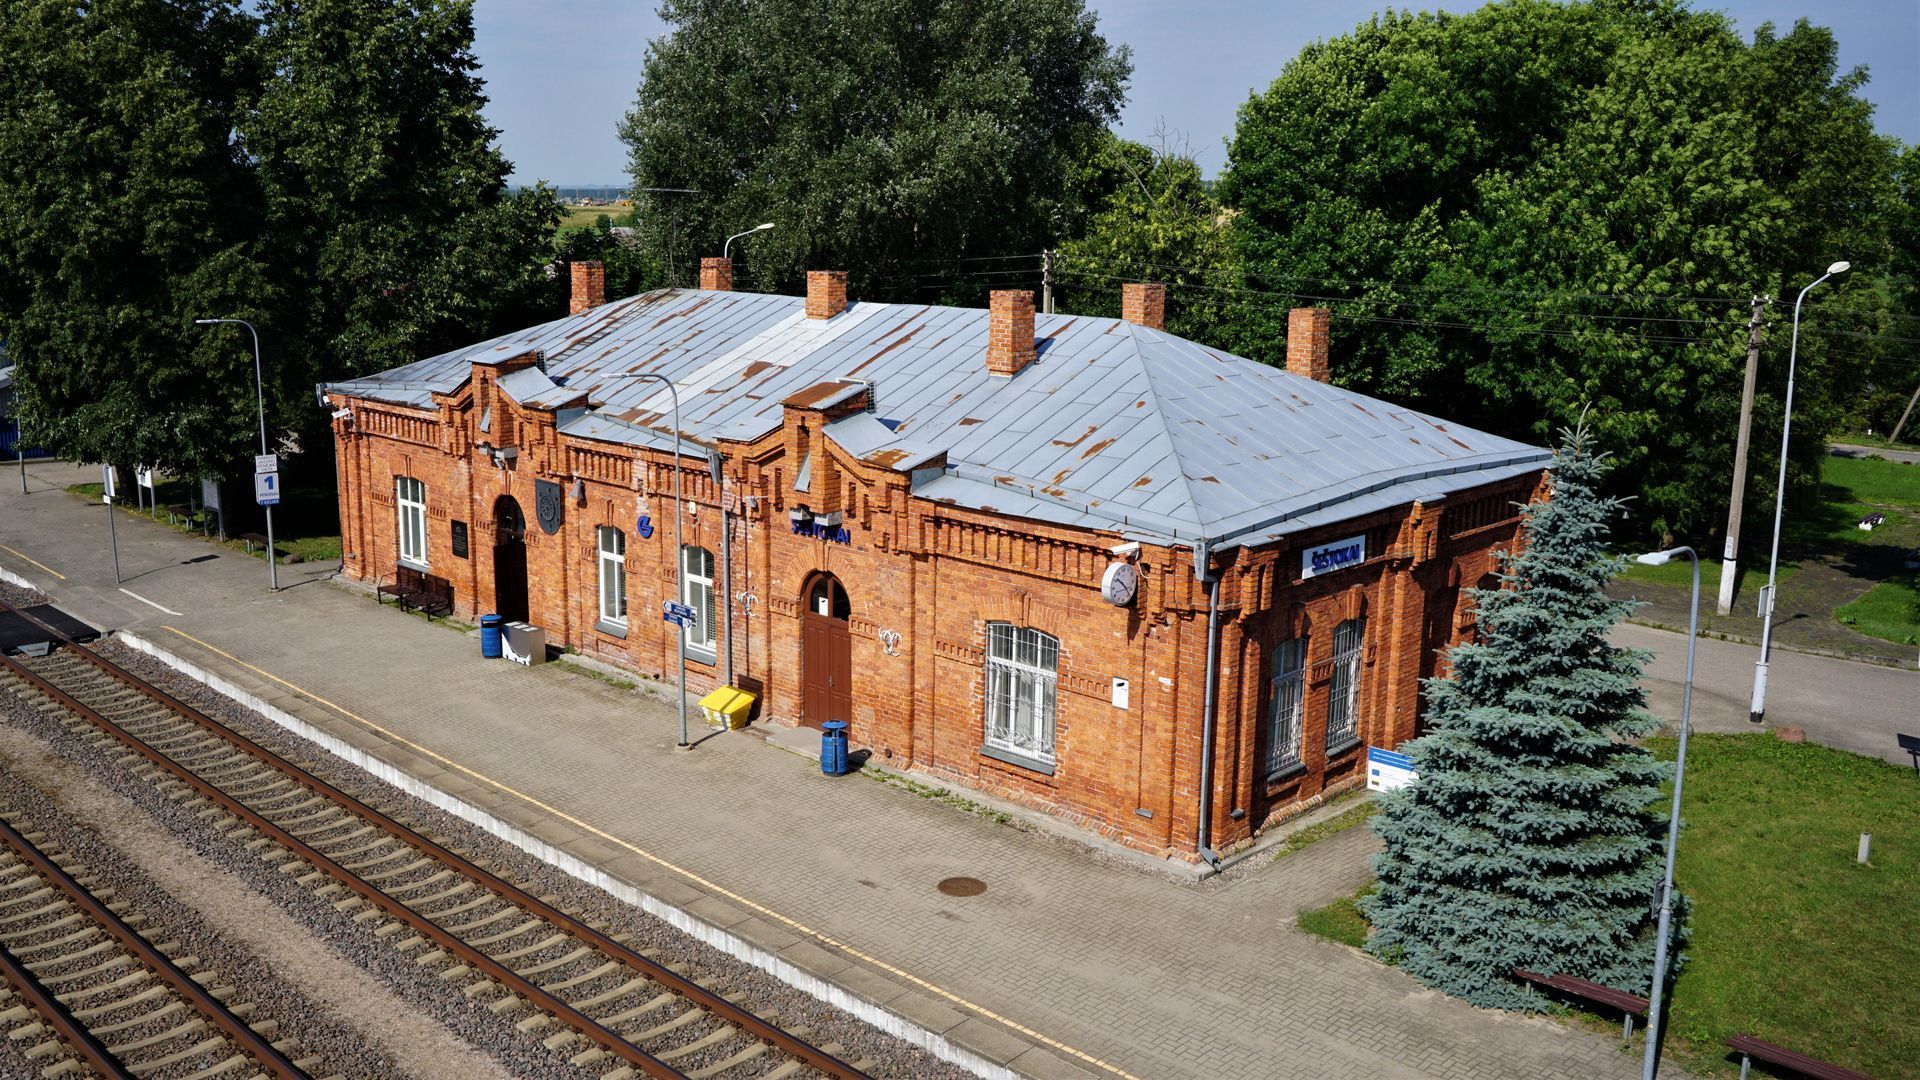 Šeštokai Railway Station